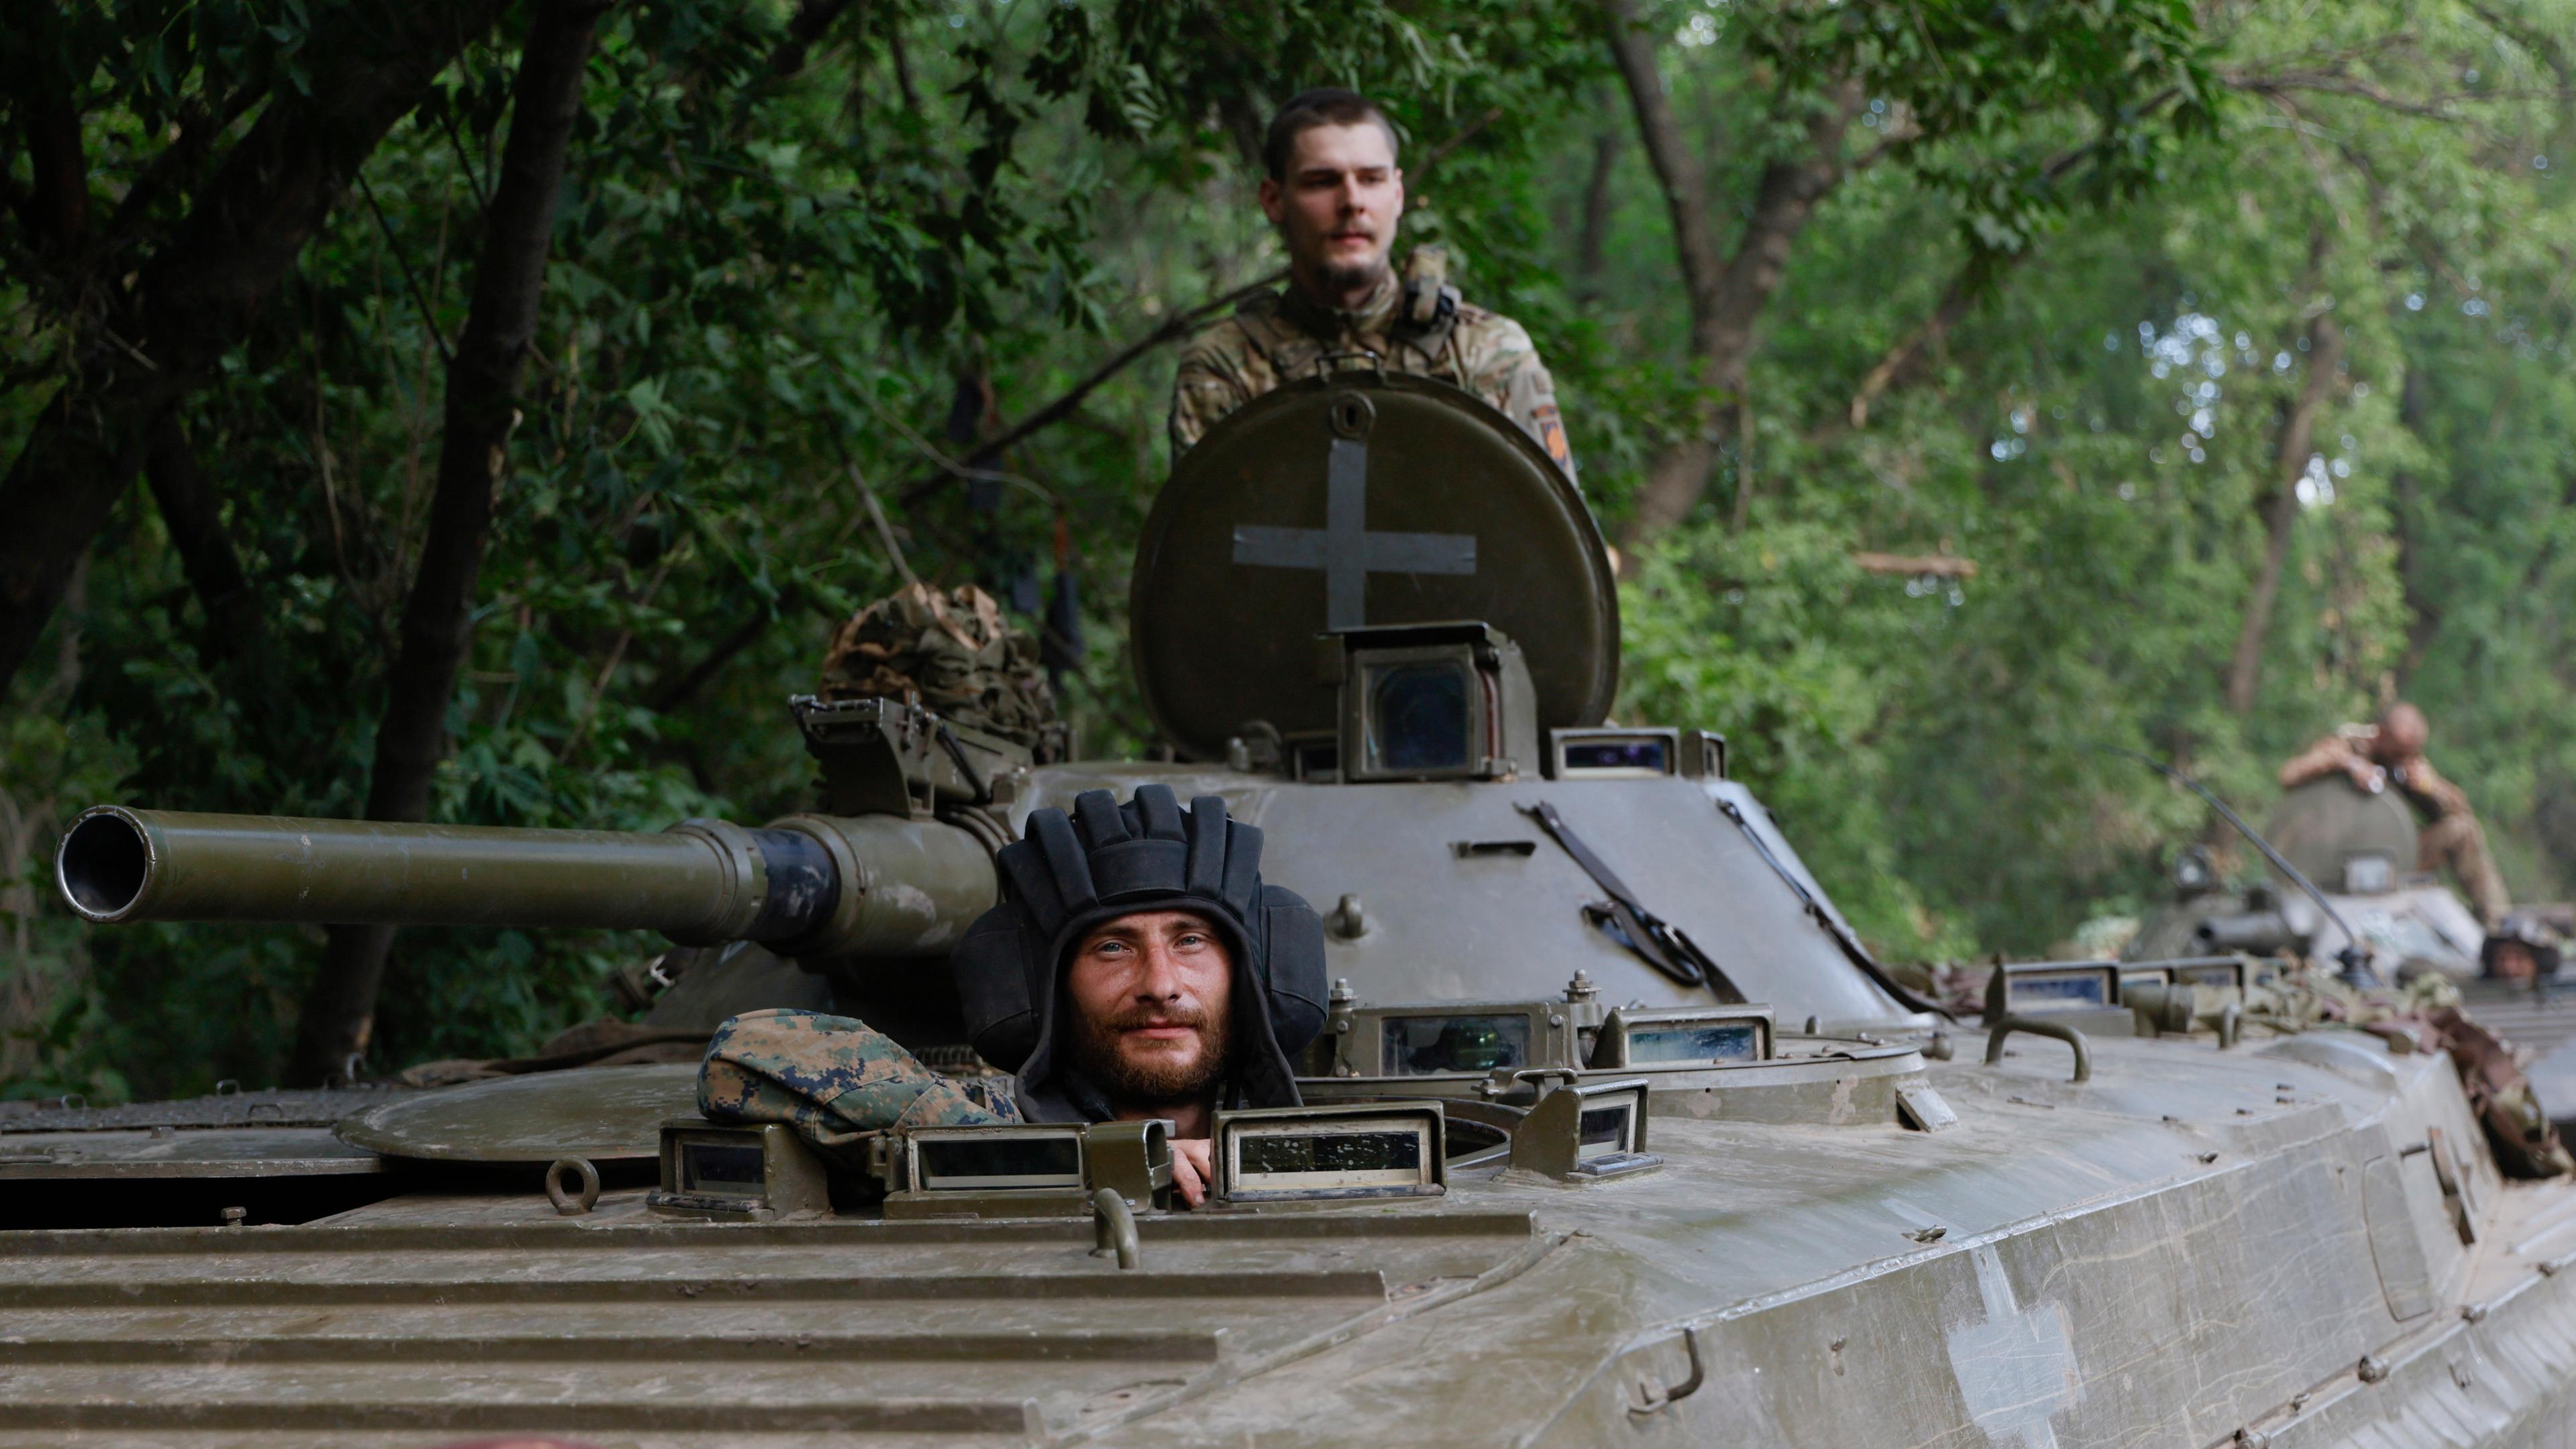 Ukrainische Soldaten der 3. separaten Angriffsbrigade fahren auf einem gepanzerten Mannschaftstransportwagen (APC) an einer Straße in der Nähe der Frontstadt Bakhmut, Region Donezk, Ostukraine, am 01. Juli 2023 (Ausgabe vom 02. Juli 2023), inmitten der russischen Invasion.